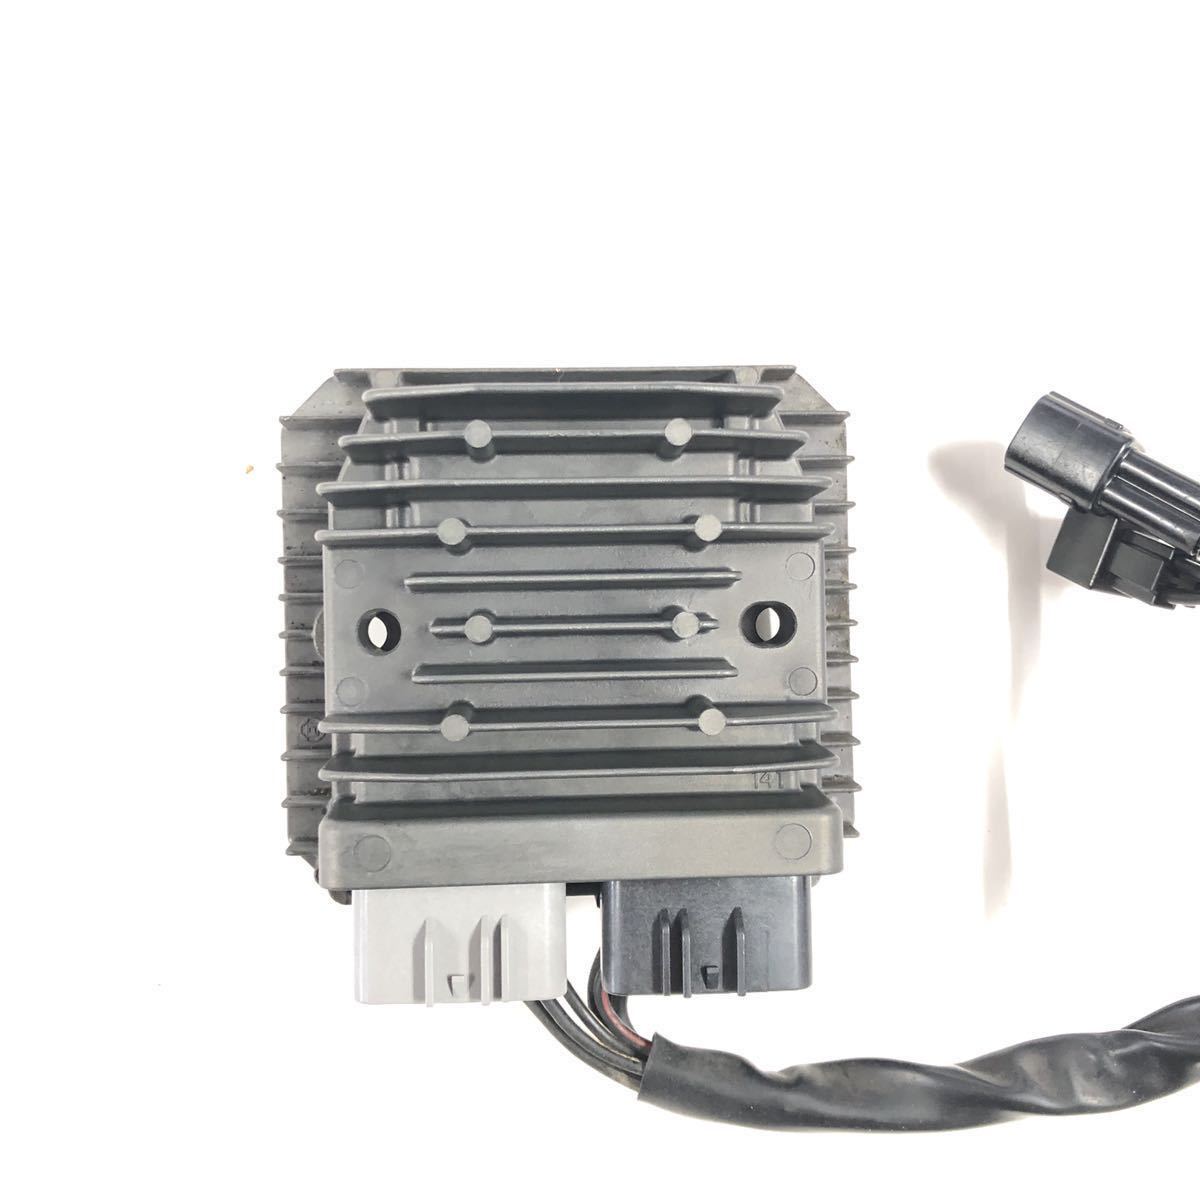 MOSFET レギュレター レギュレーター 電圧安定 スズキ タイプ2 GSX1300R SV1000 GSXR600 DL650 GSF1250 GSXR1000の画像6